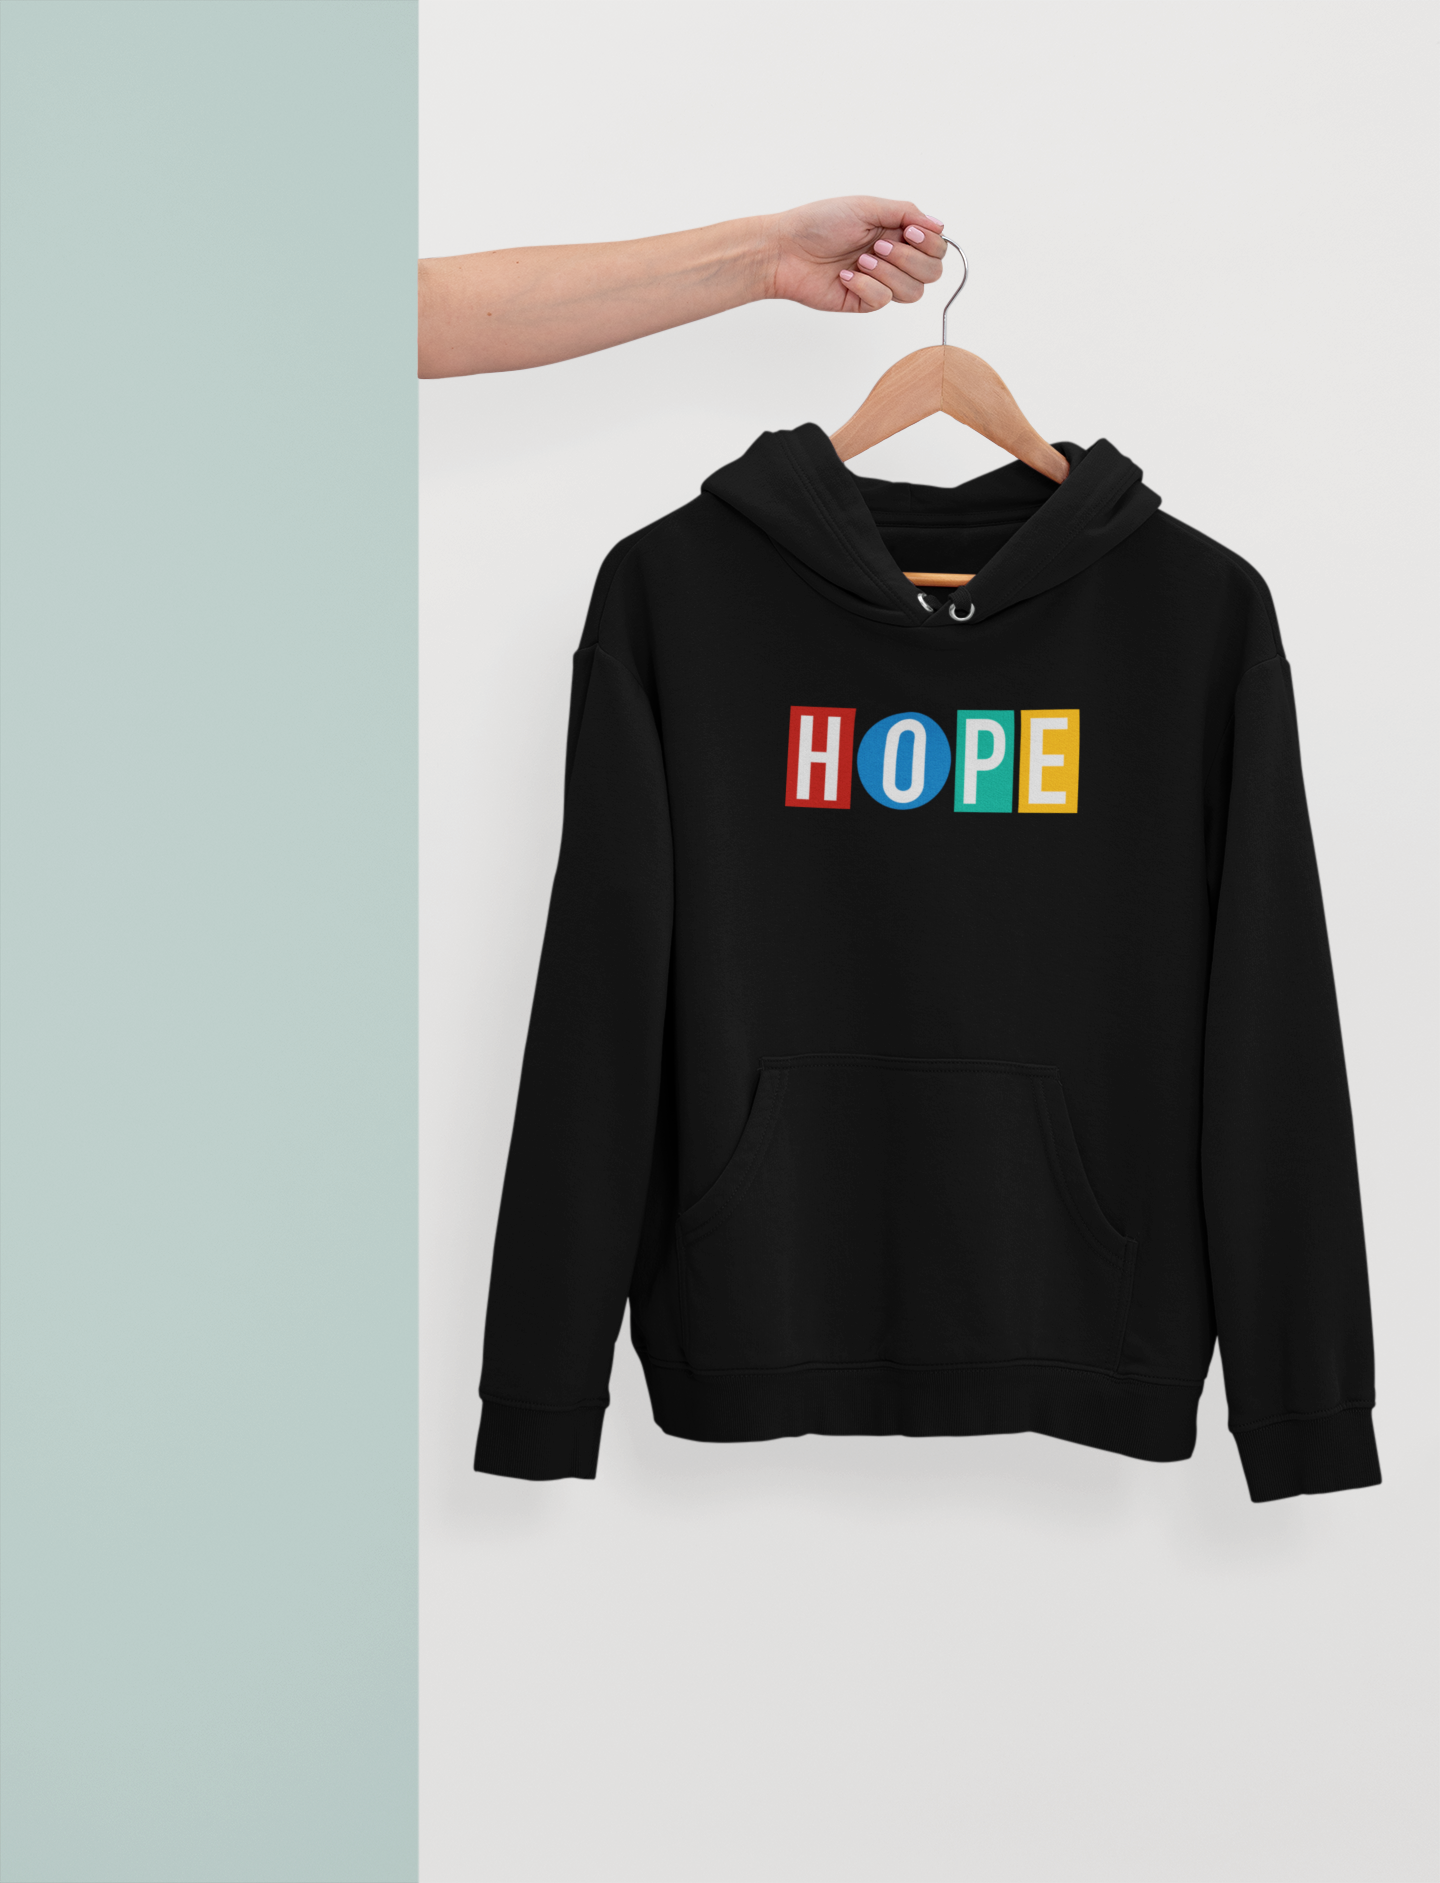 HOPE : BTS J HOPE - WINTER HOODIES